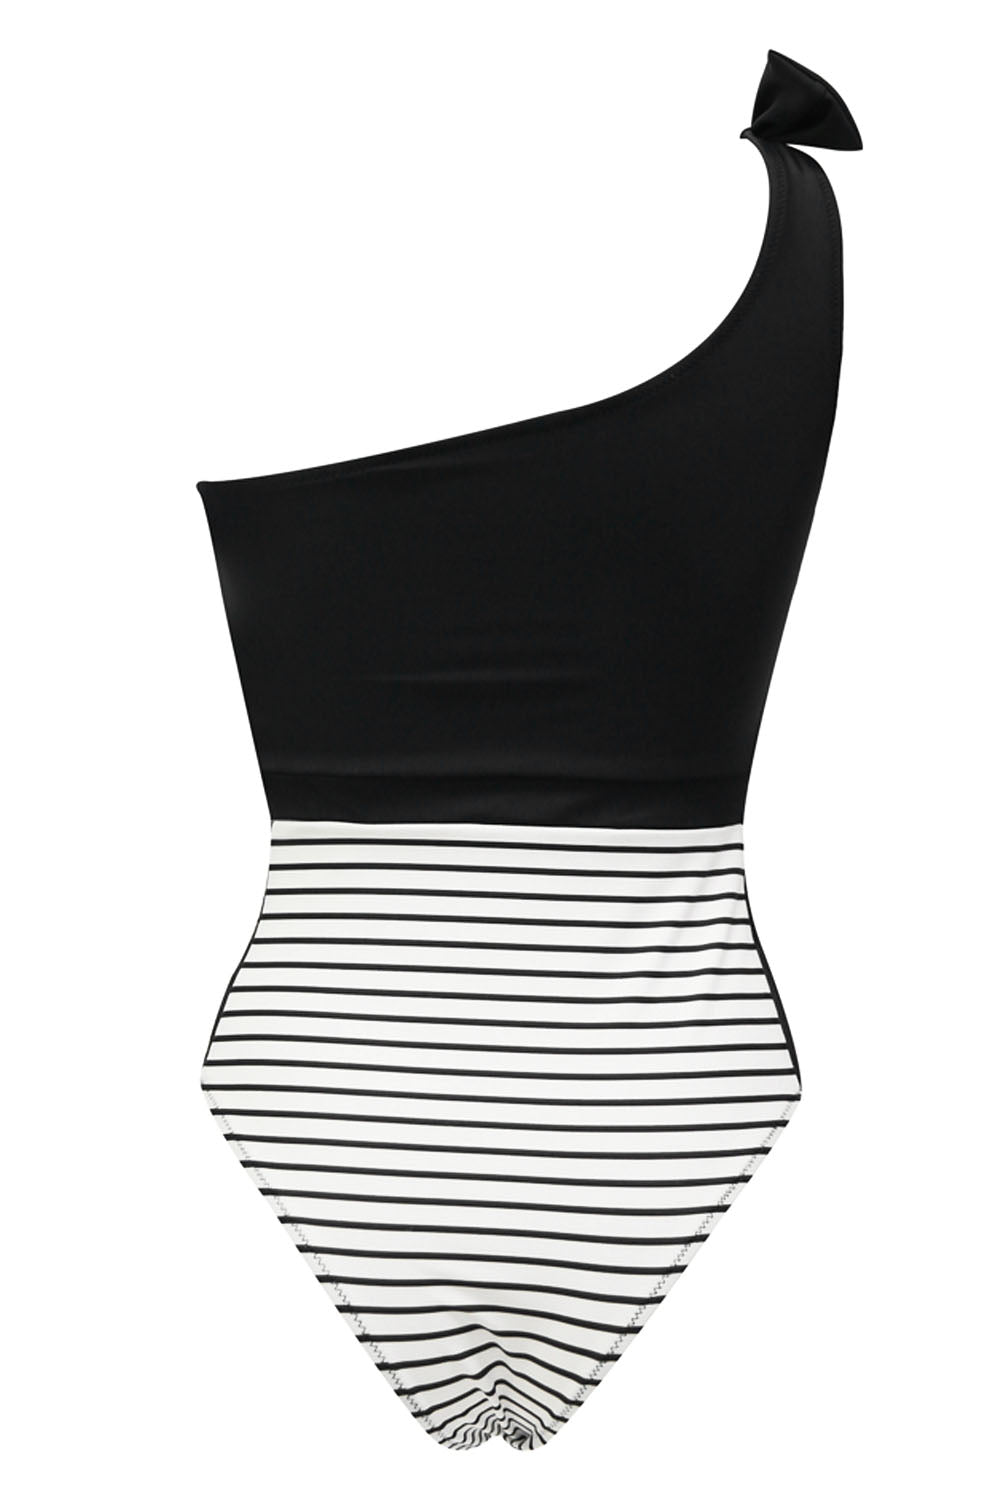 Iyasson Women's Cute Ruffled Lace Stitching Stripe Bottom One-piece Swimsuit